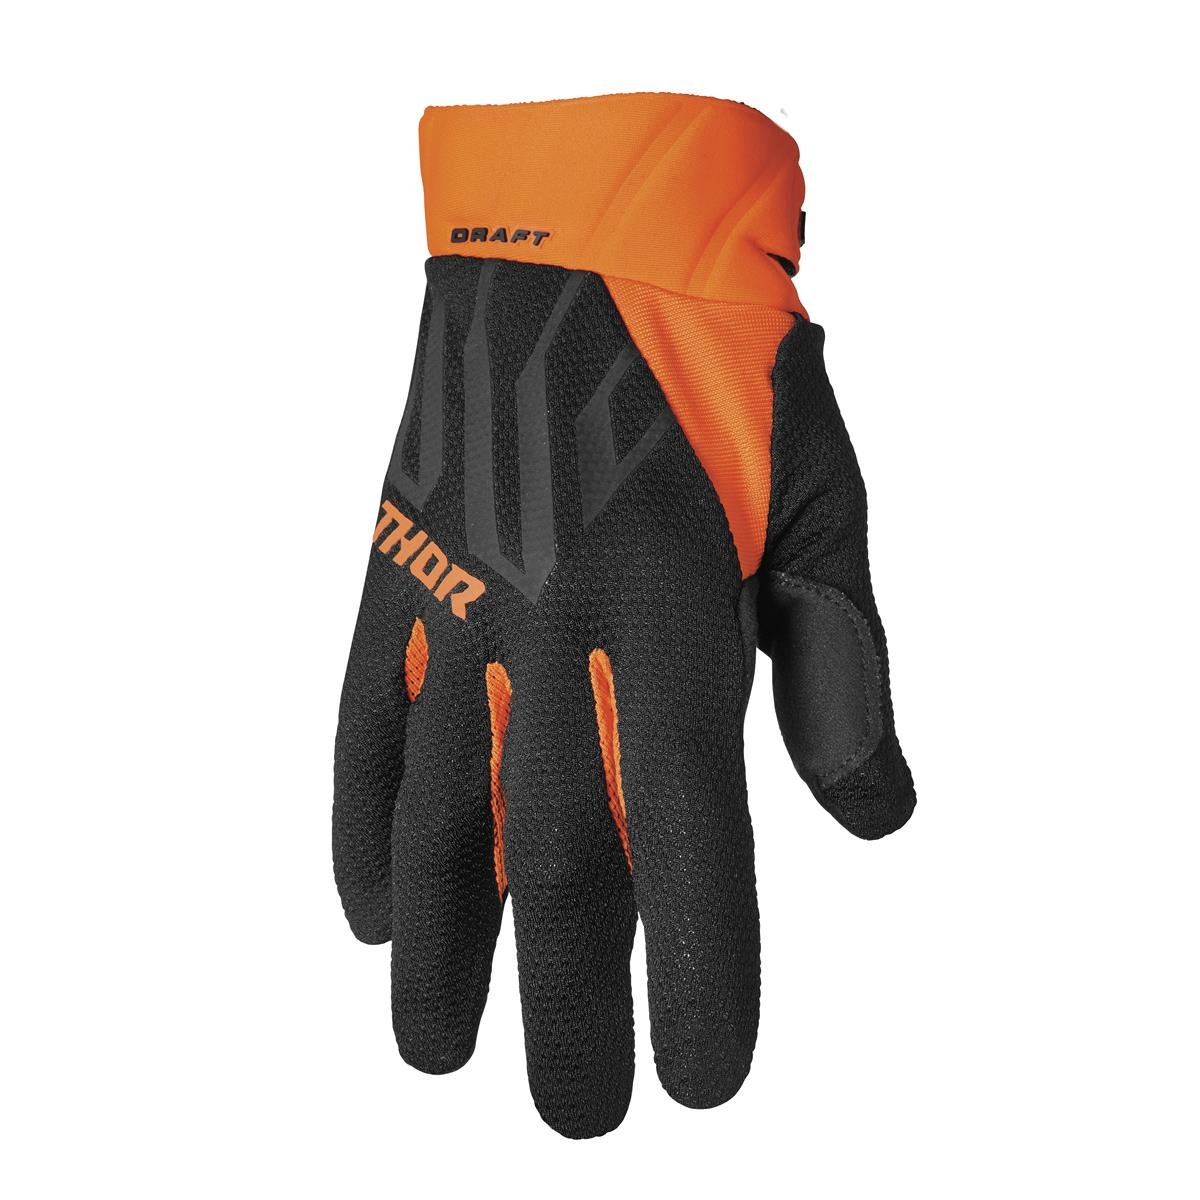 Thor Handschuhe Draft Schwarz/Orange